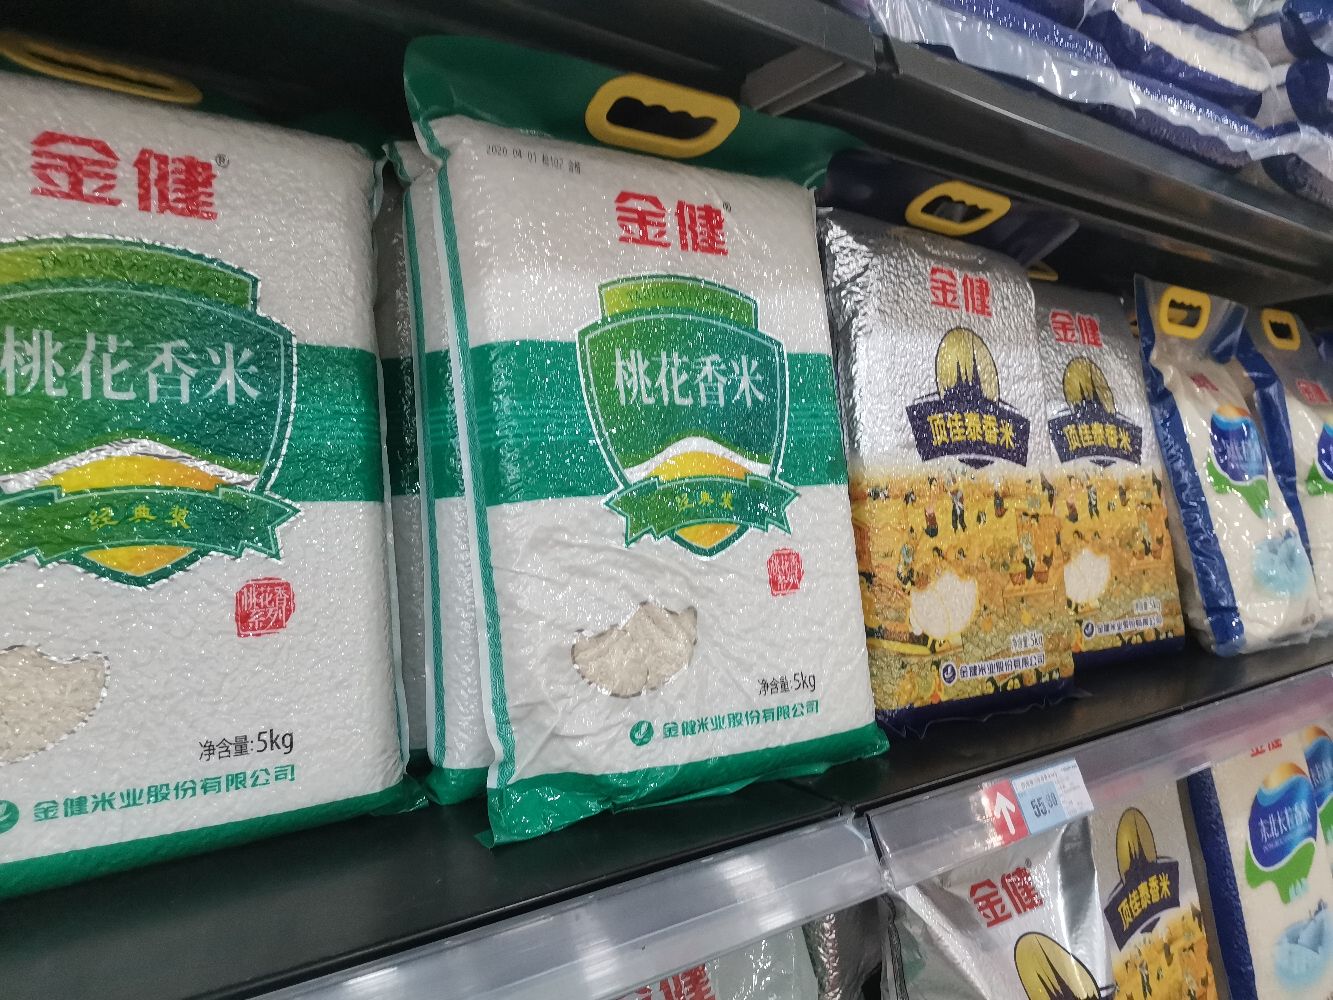 超市好多金健米业的米,平时没注意,注意的时候股价涨的老高了!